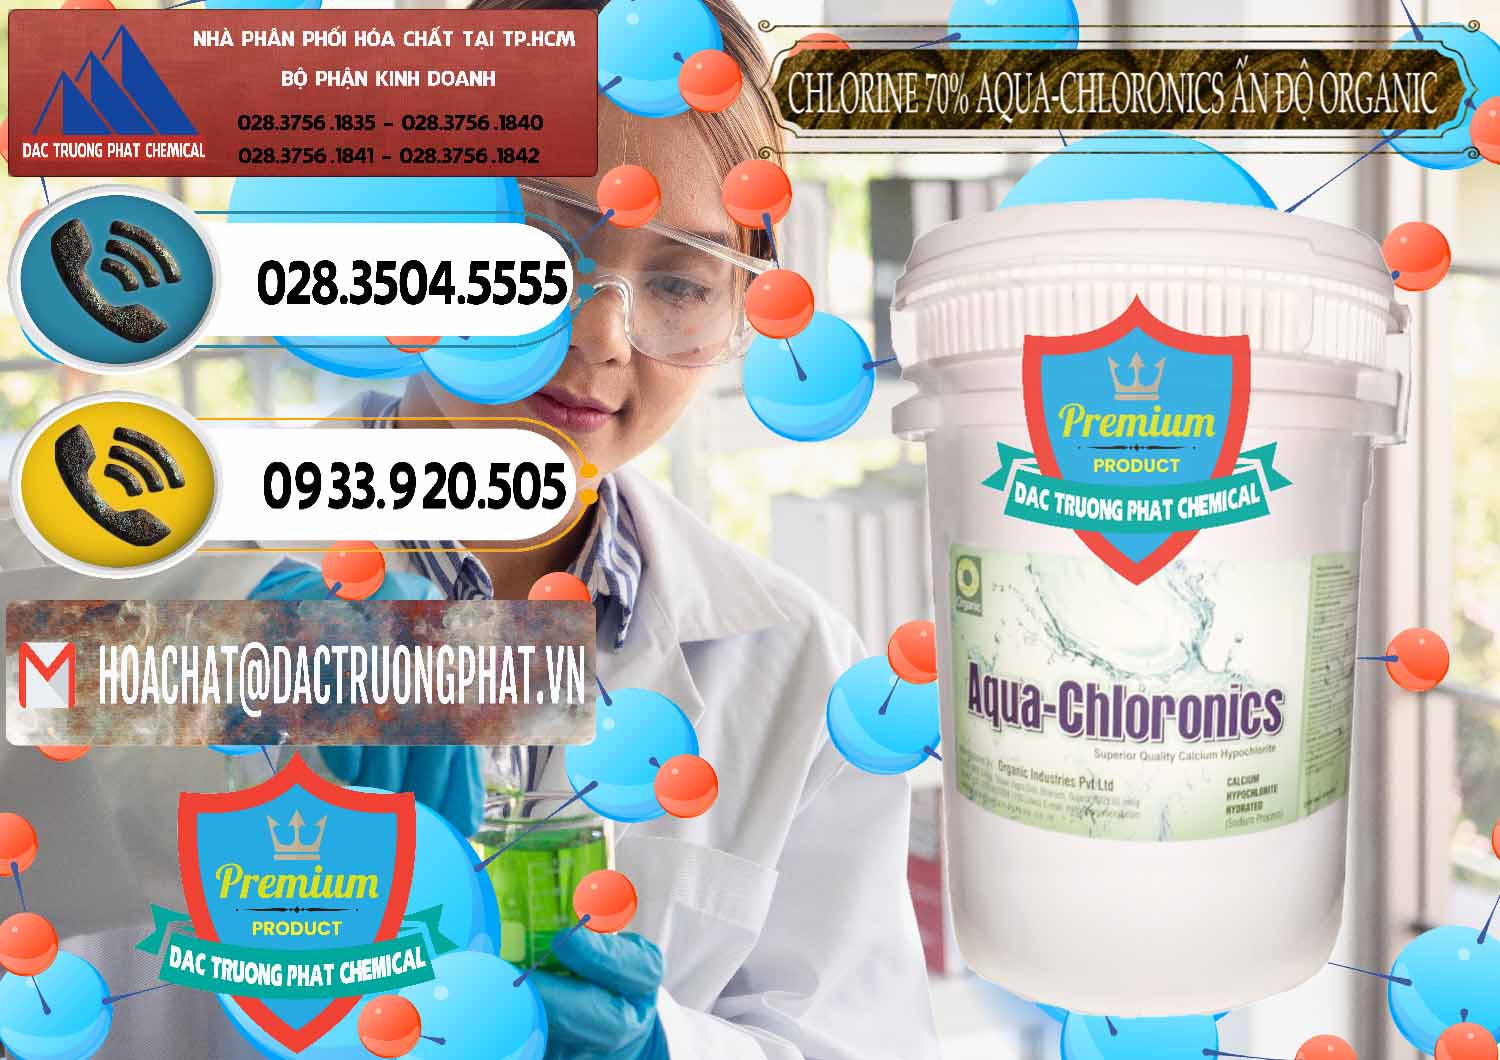 Công ty chuyên cung ứng và bán Chlorine – Clorin 70% Aqua-Chloronics Ấn Độ Organic India - 0211 - Đơn vị chuyên kinh doanh và phân phối hóa chất tại TP.HCM - hoachatdetnhuom.vn